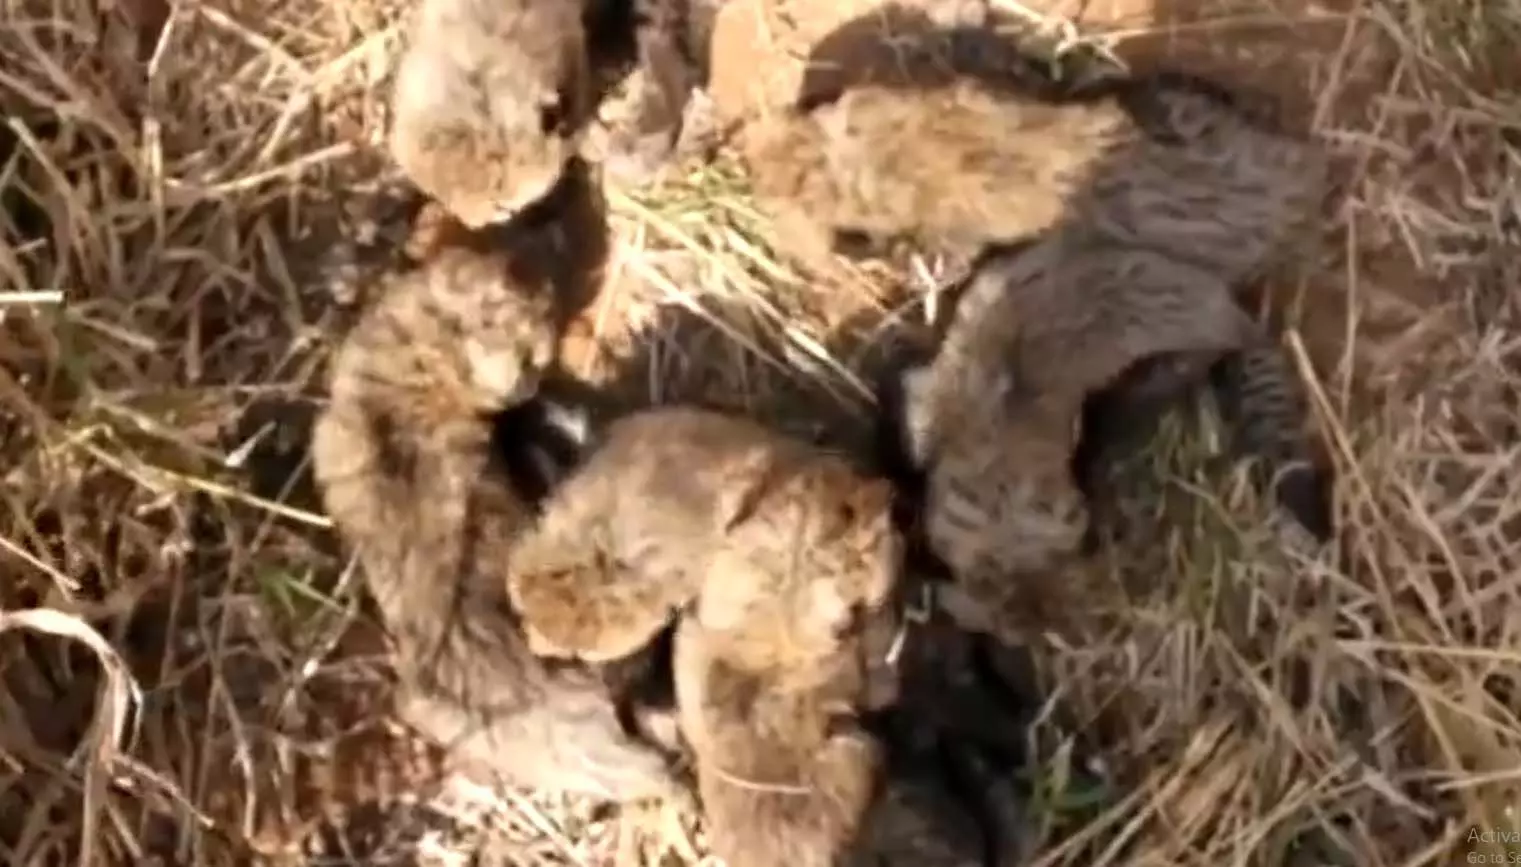 कूनो नेशनल पार्क में चीता गामिनी ने 5 नहीं 6 शावकों को दिया था जन्म, VIDEO